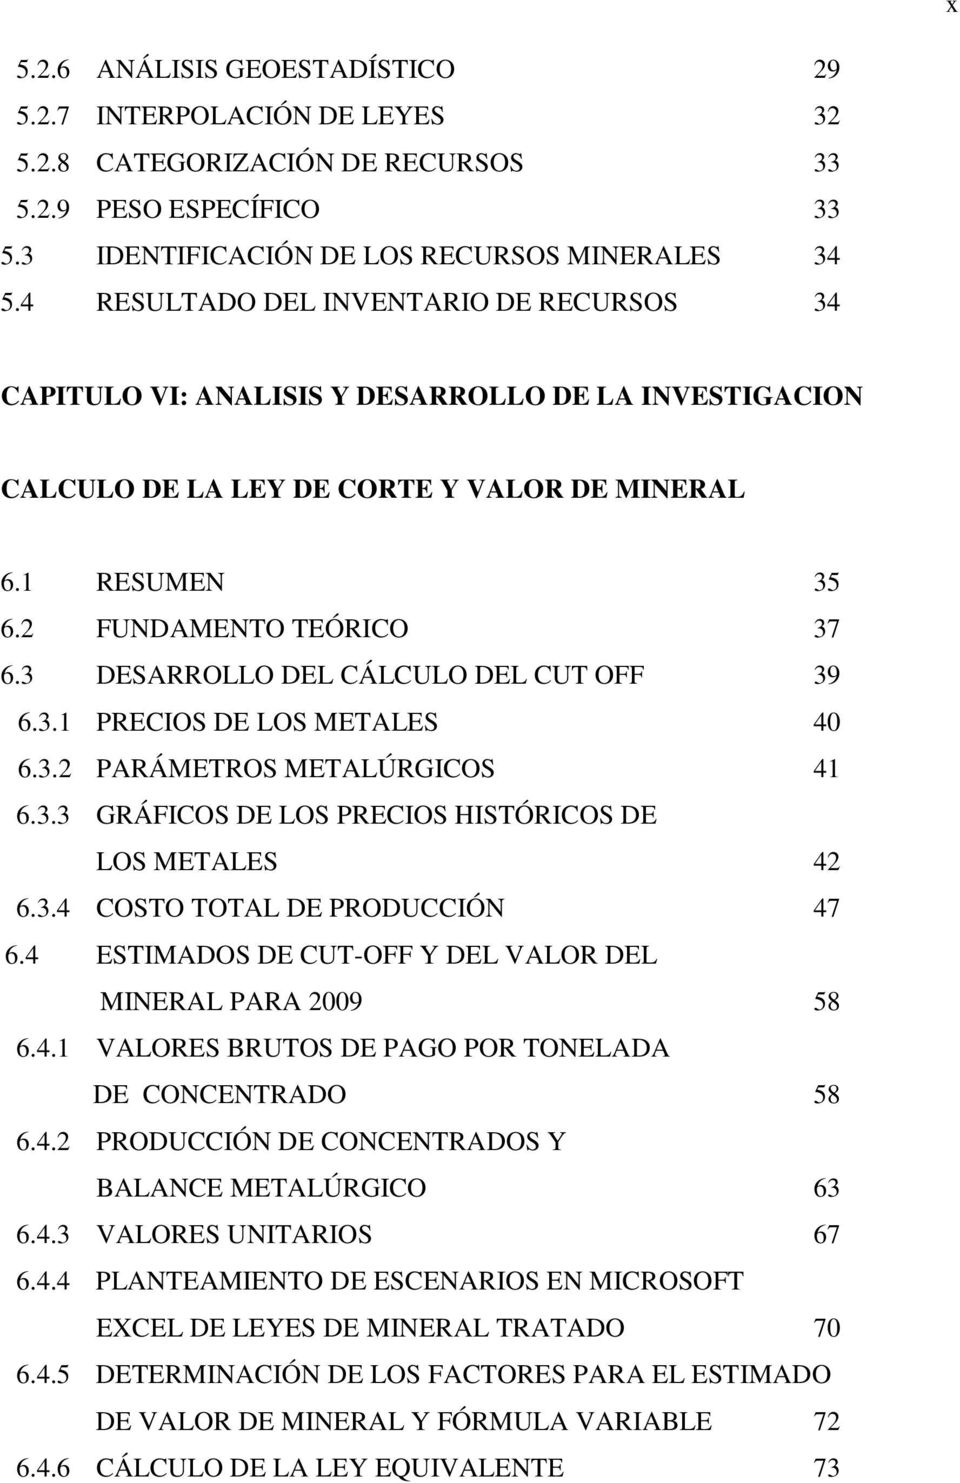 3 DESARROLLO DEL CÁLCULO DEL CUT OFF 39 6.3.1 PRECIOS DE LOS METALES 40 6.3.2 PARÁMETROS METALÚRGICOS 41 6.3.3 GRÁFICOS DE LOS PRECIOS HISTÓRICOS DE LOS METALES 42 6.3.4 COSTO TOTAL DE PRODUCCIÓN 47 6.